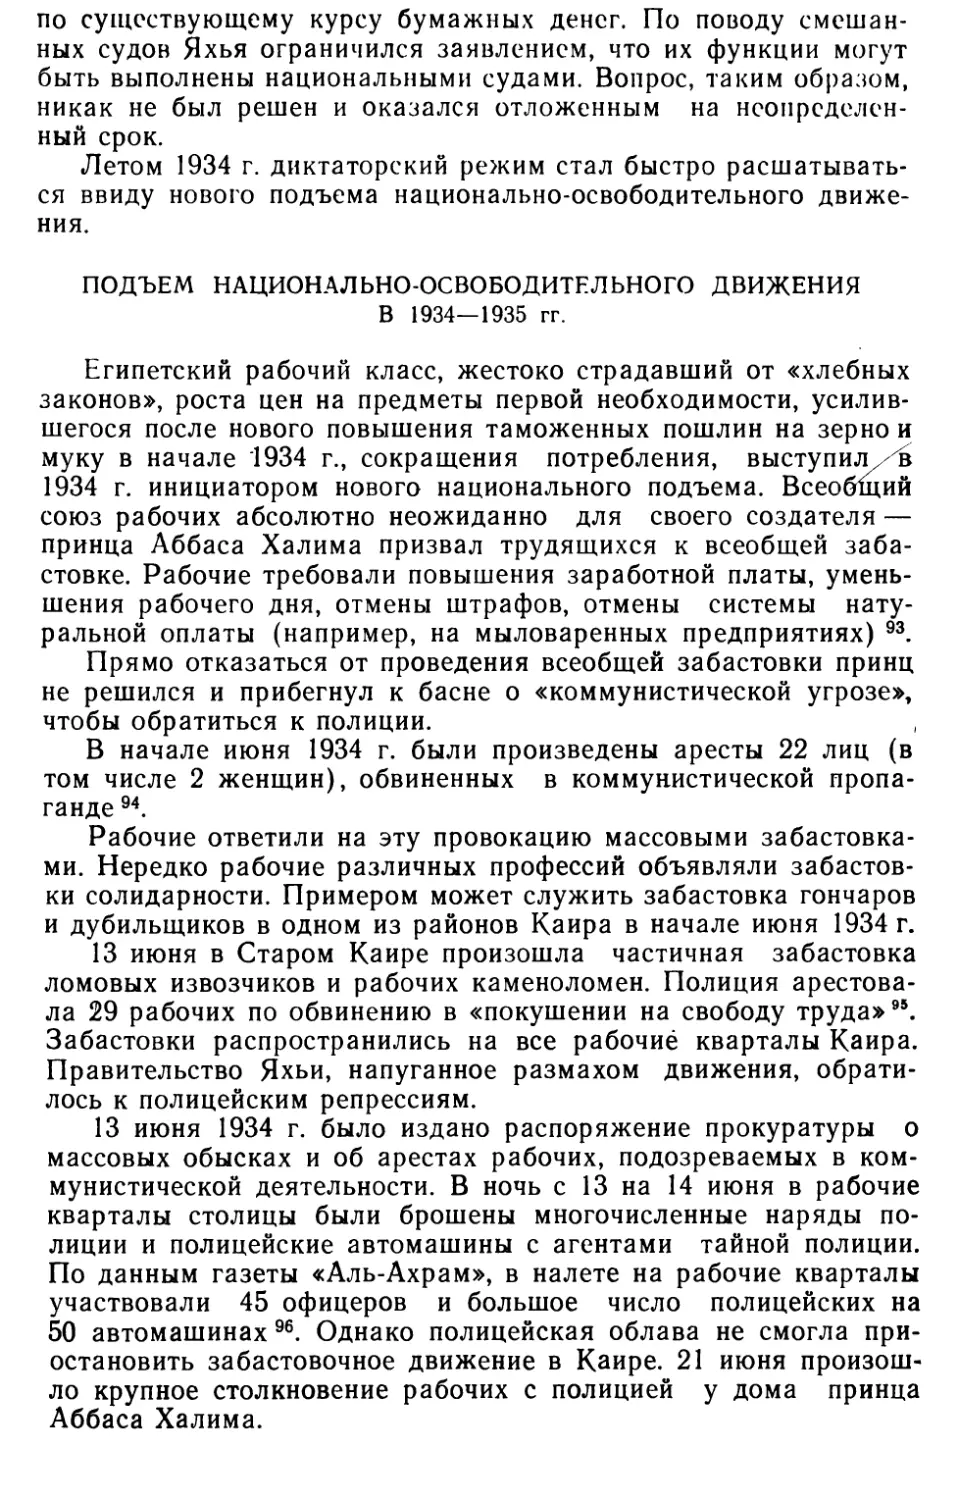 Подъем национально-освободительного движения в 1934—1935 гг.